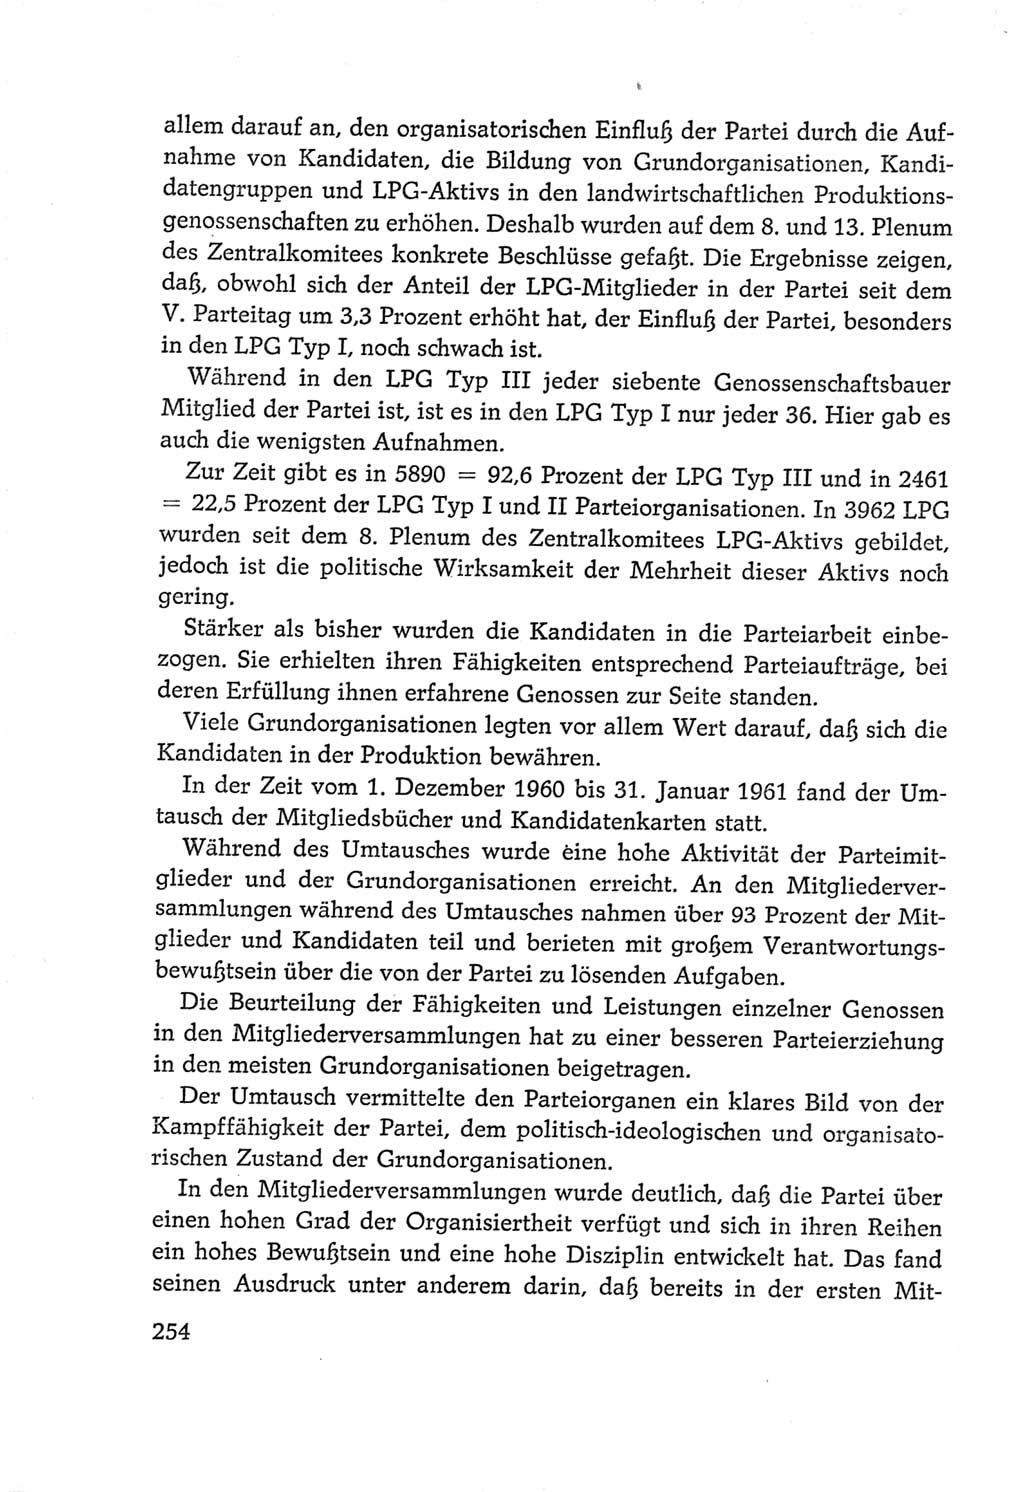 Protokoll der Verhandlungen des Ⅵ. Parteitages der Sozialistischen Einheitspartei Deutschlands (SED) [Deutsche Demokratische Republik (DDR)] 1963, Band Ⅳ, Seite 254 (Prot. Verh. Ⅵ. PT SED DDR 1963, Bd. Ⅳ, S. 254)